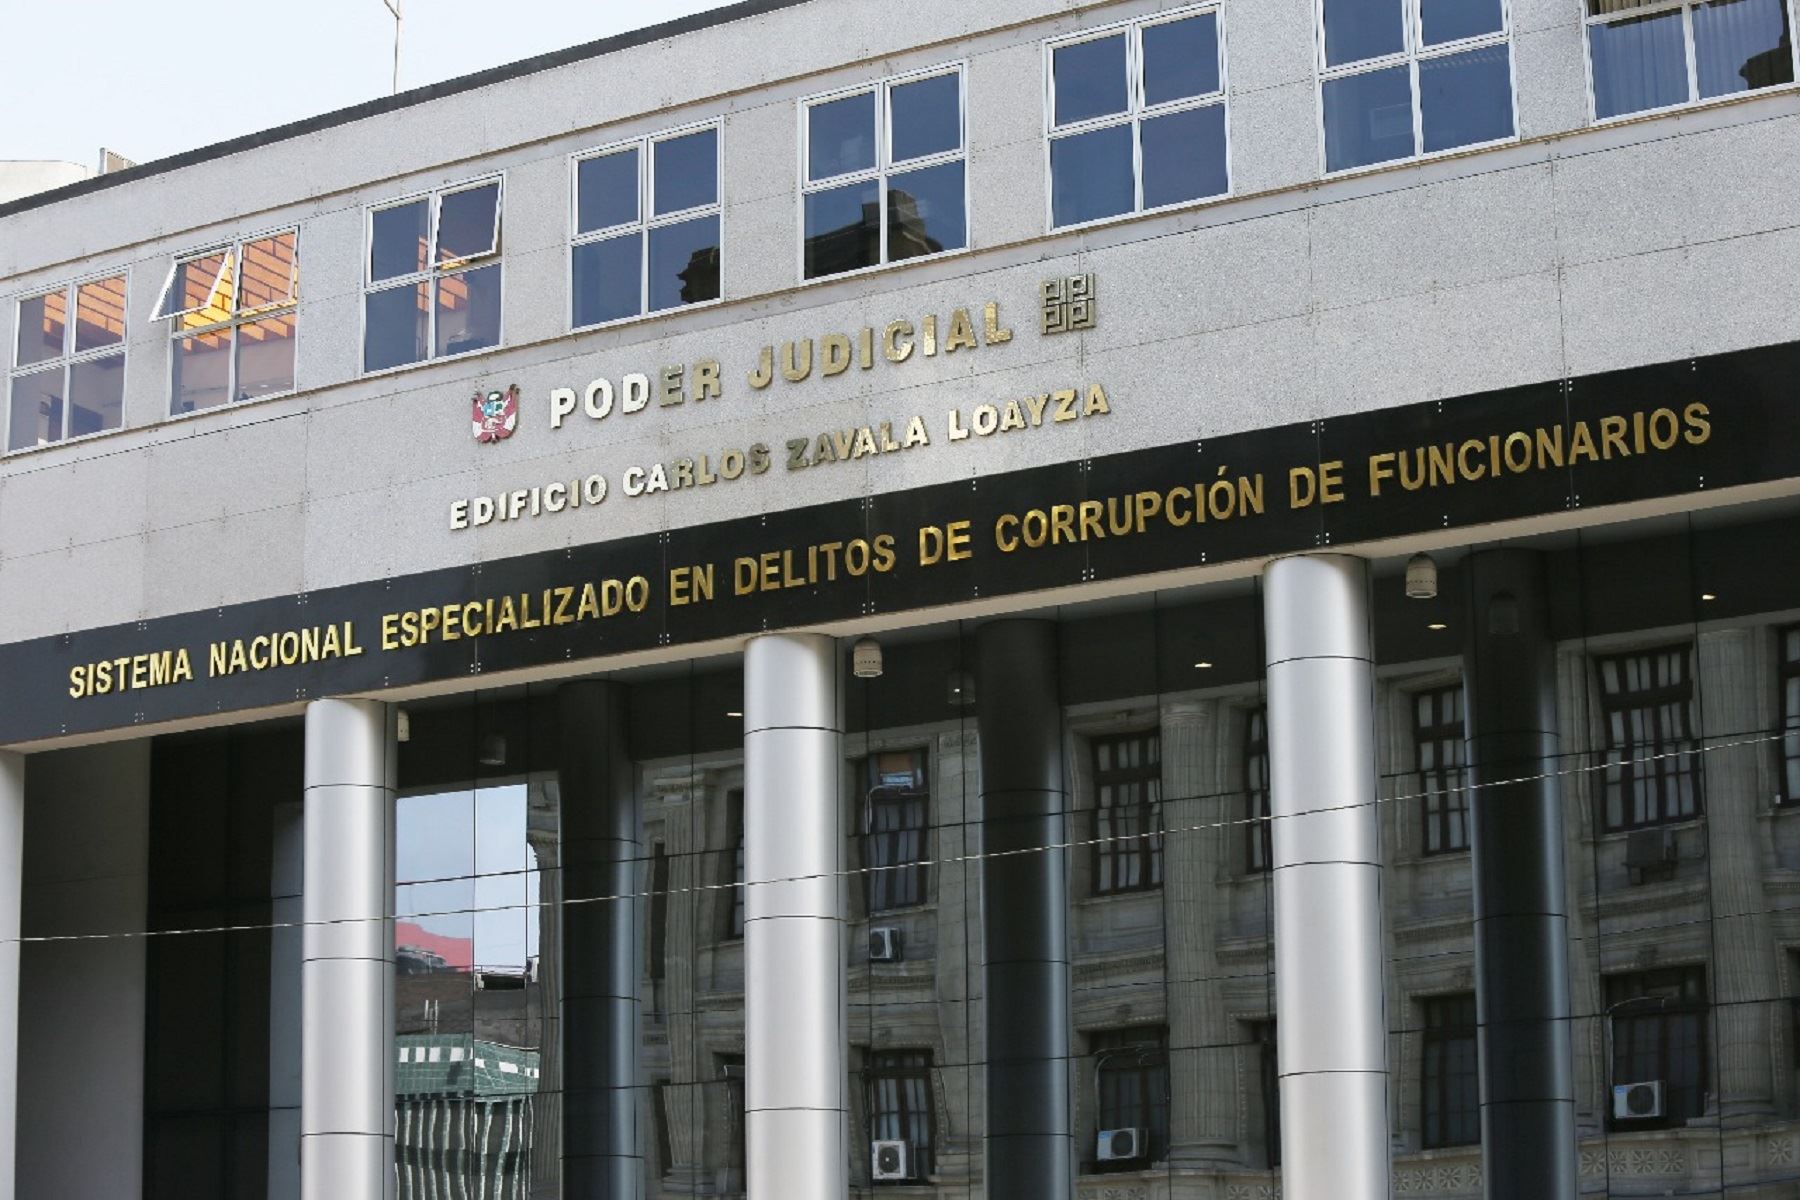 Sistema Nacional Especializado en Delitos de Corrupción de Funcionarios.